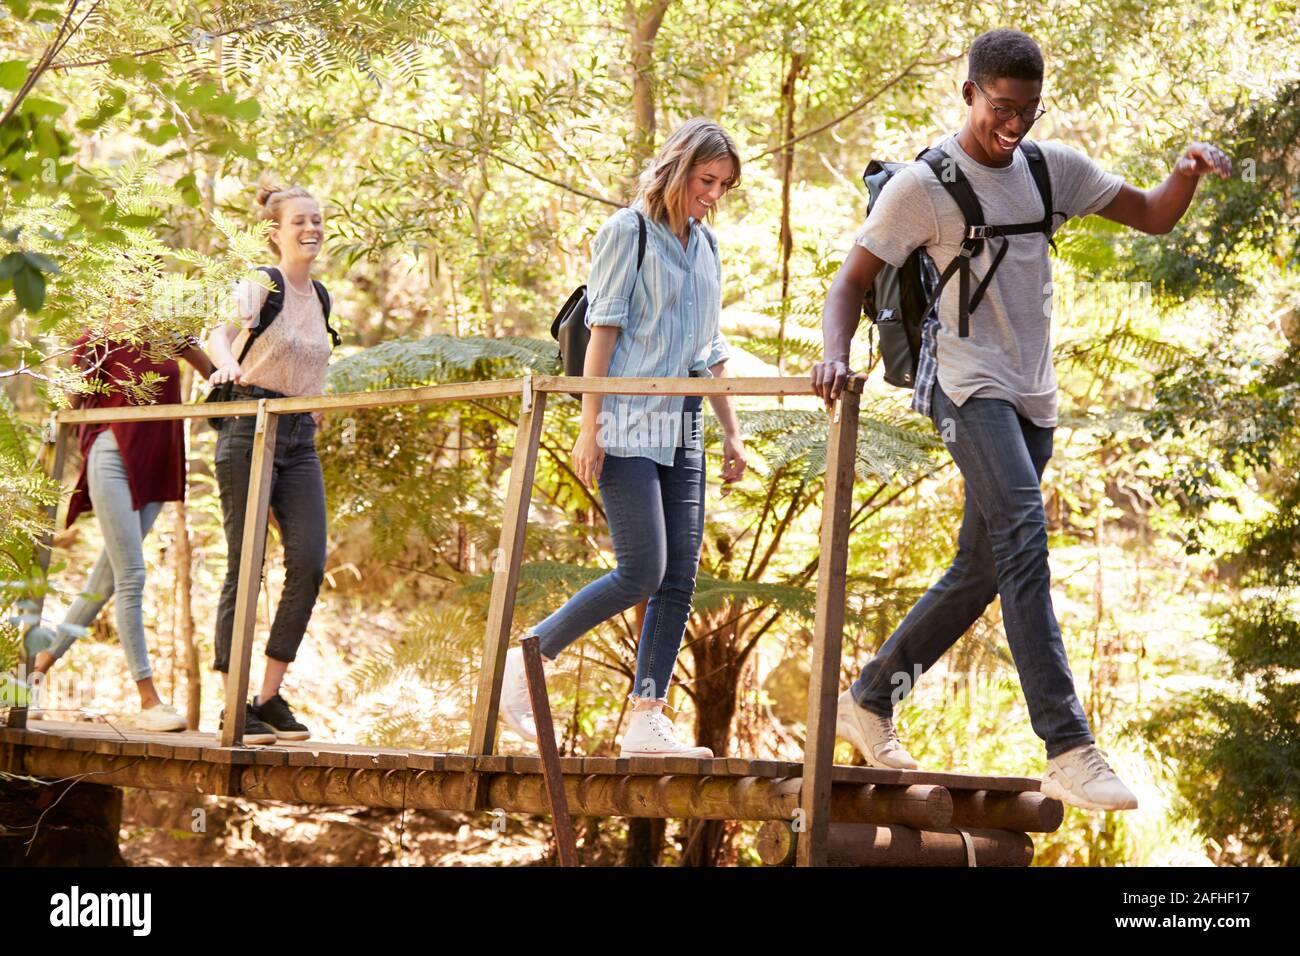 Les amis des jeunes adultes traversant une passerelle au cours d'une randonnée dans une forêt, pleine longueur Banque D'Images